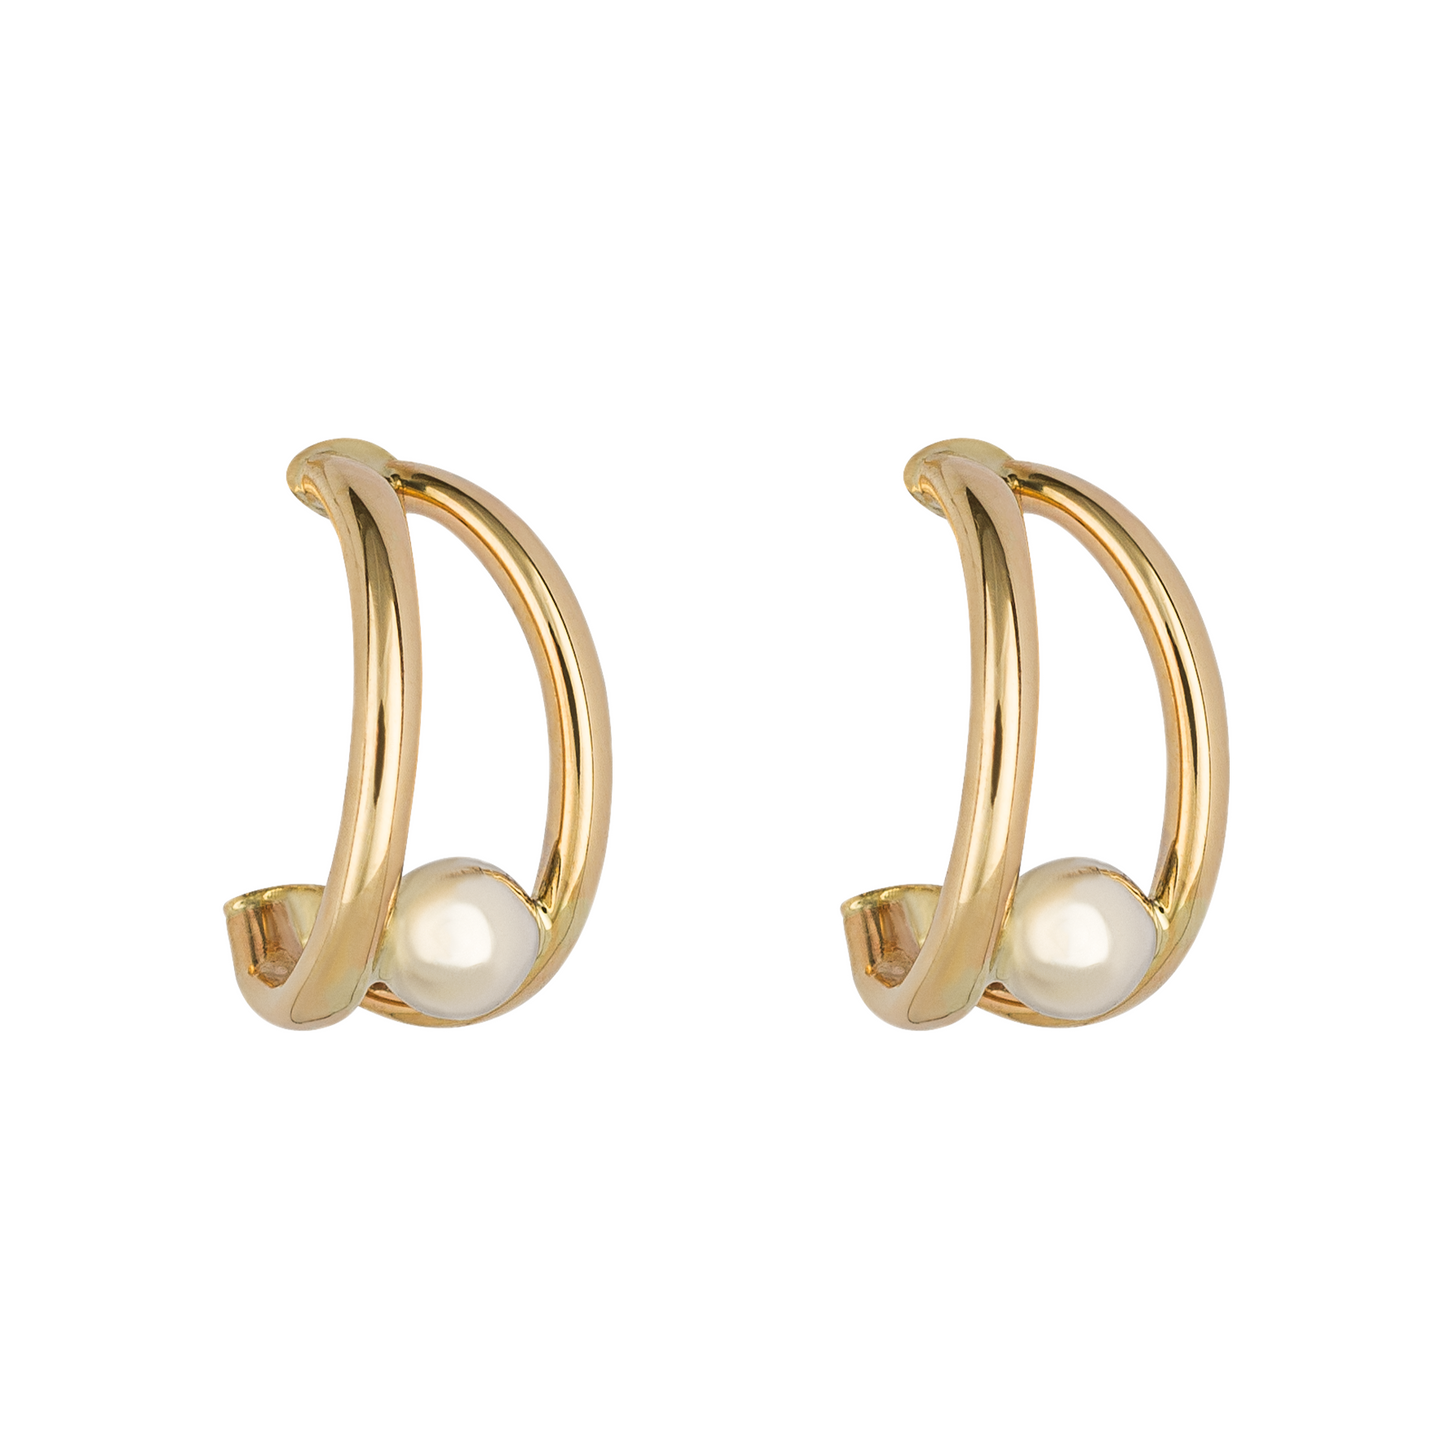 Large Twist Hoop Earrings in Yellow Gold (GE2411)